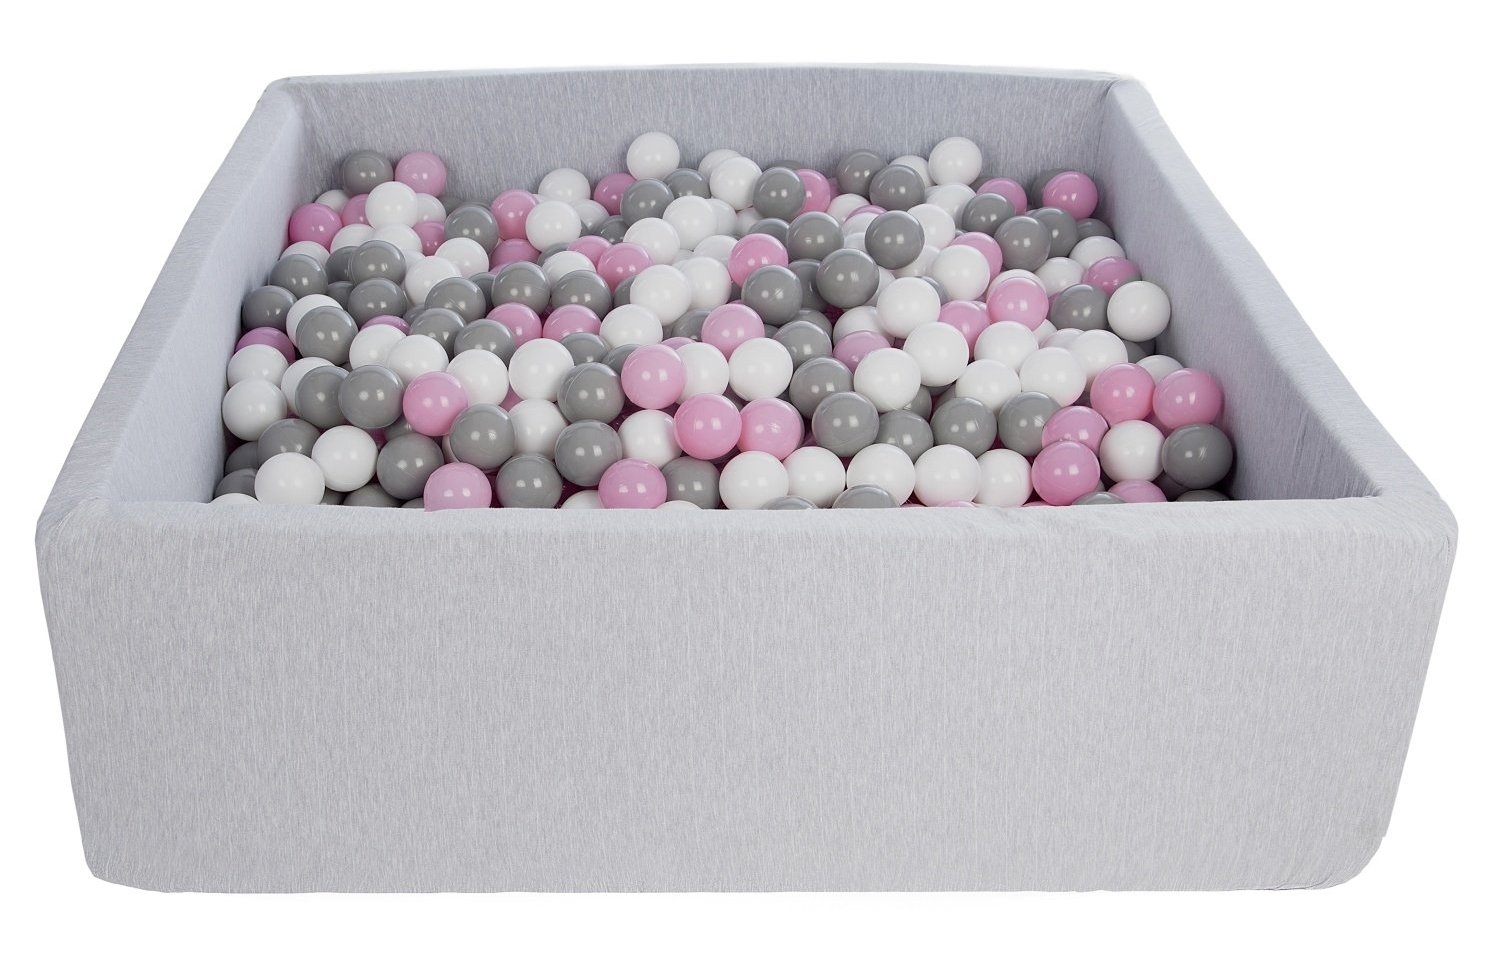 Piscine à balles carré pour bébé avec 900 balles 120x120cm gris clair balles rose